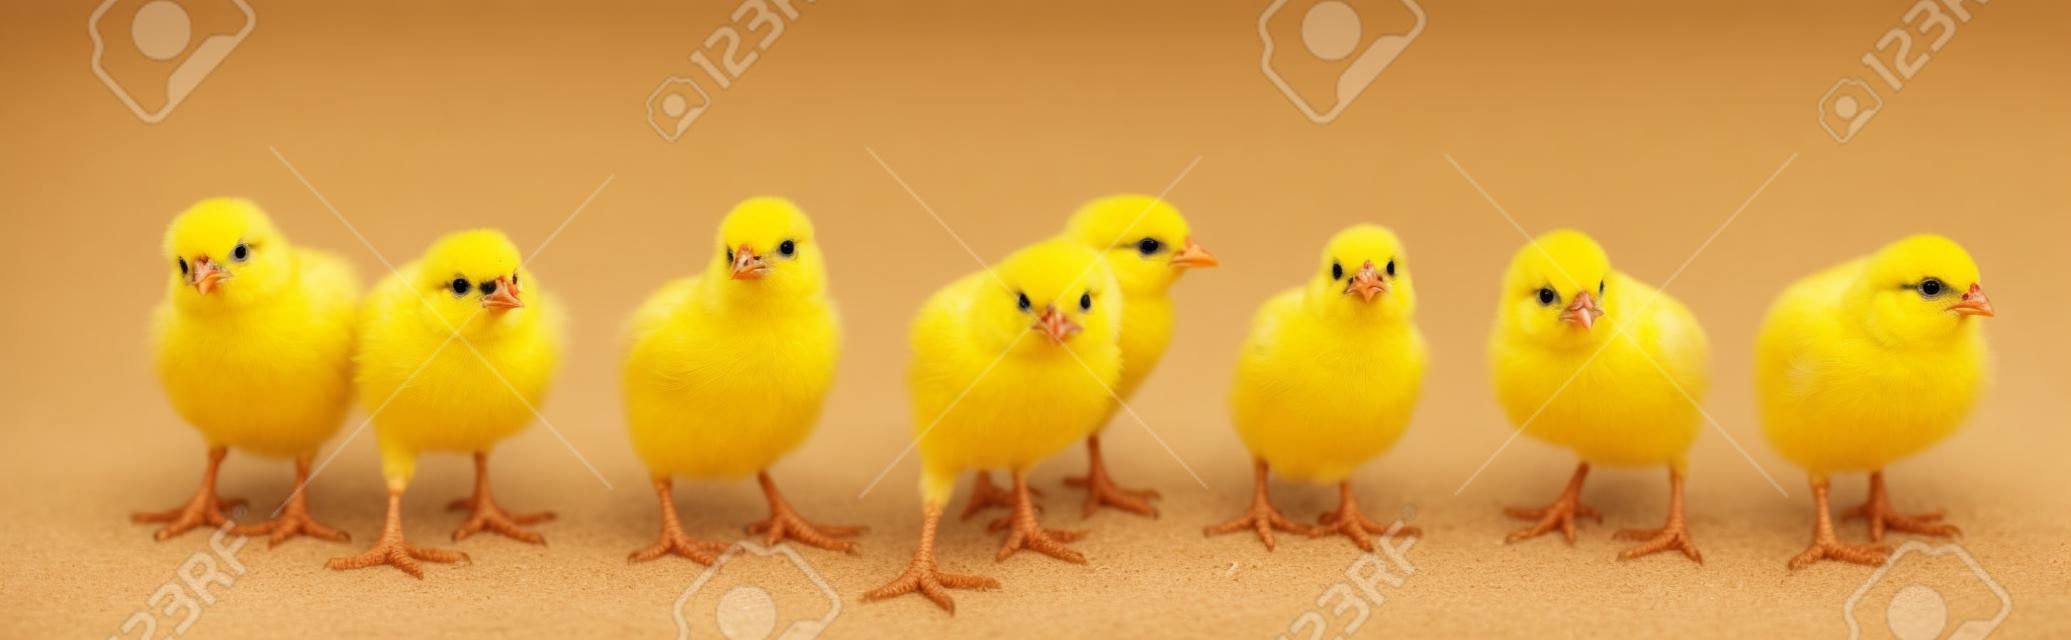 흰색 배경에 고립 된 작은 노란 병아리의 파노라마. 도보에 농장 부화기 닭.